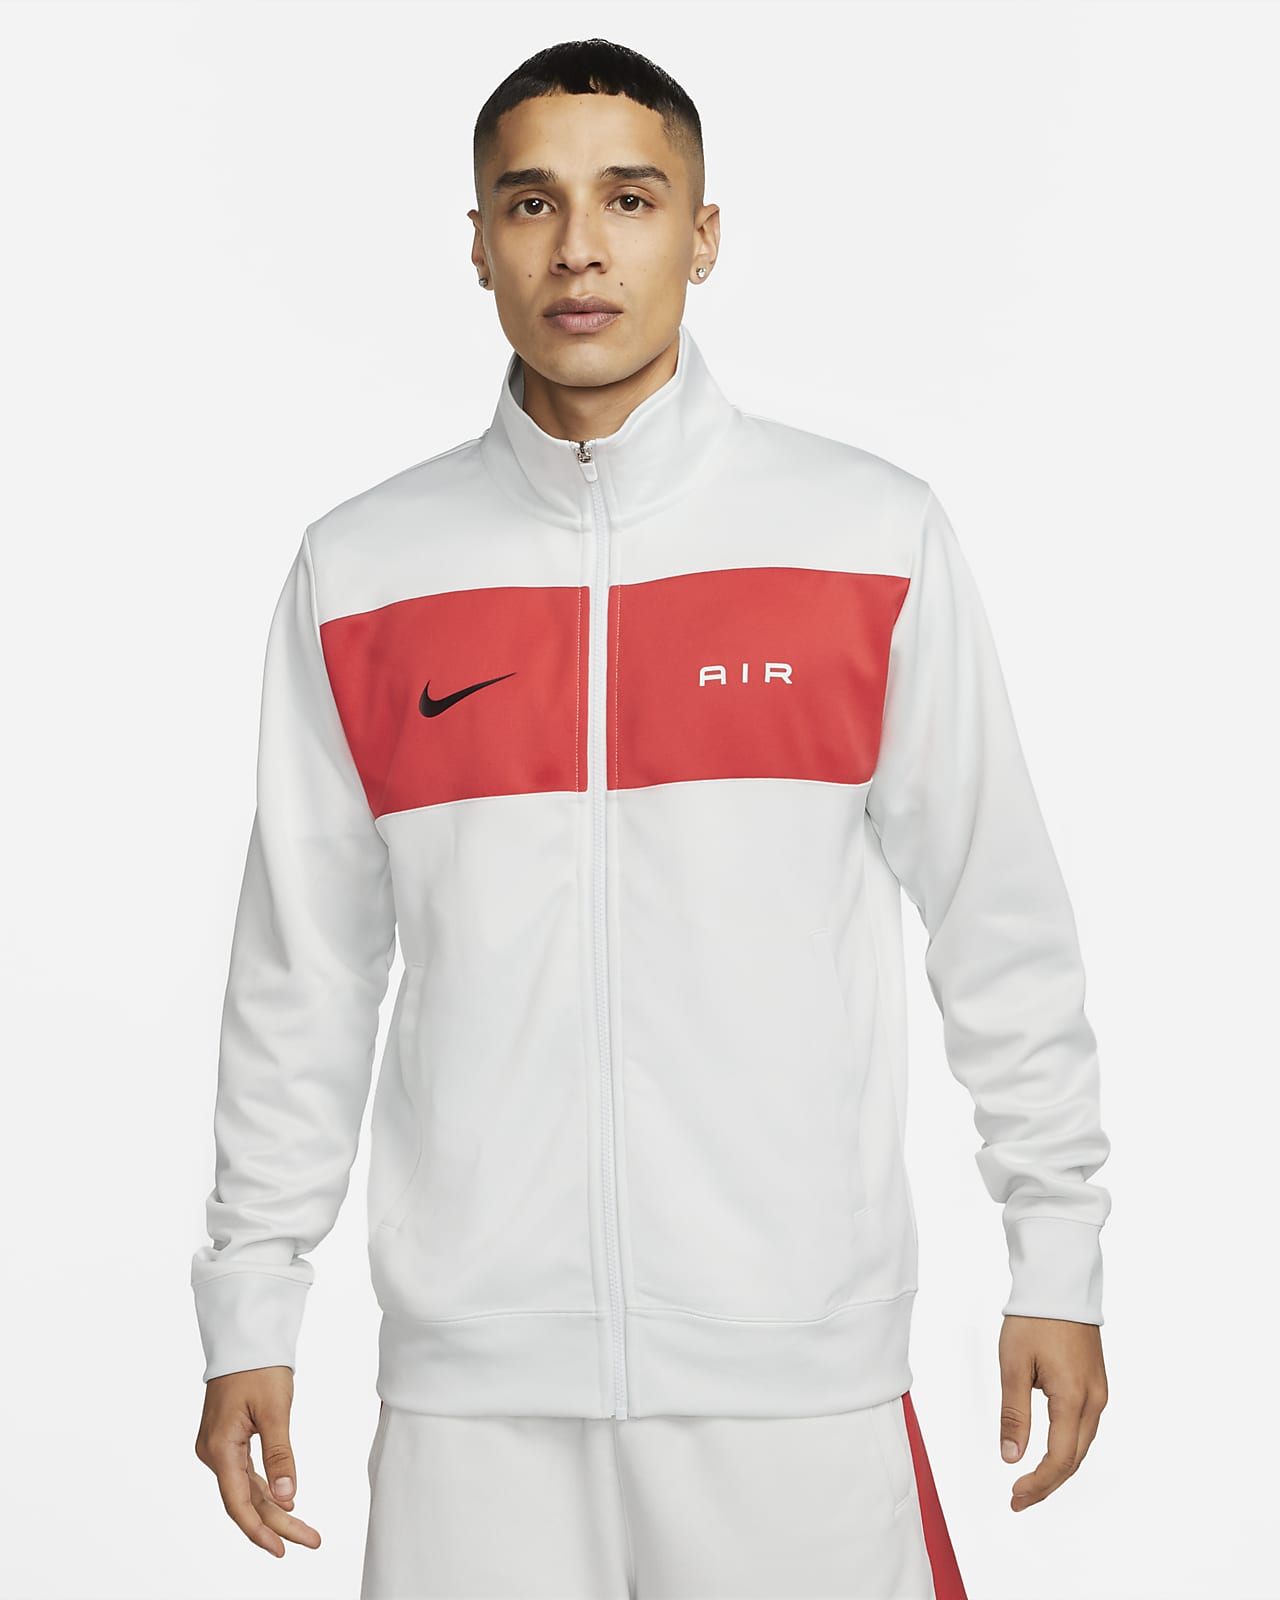 Men's Jackets. Nike LU